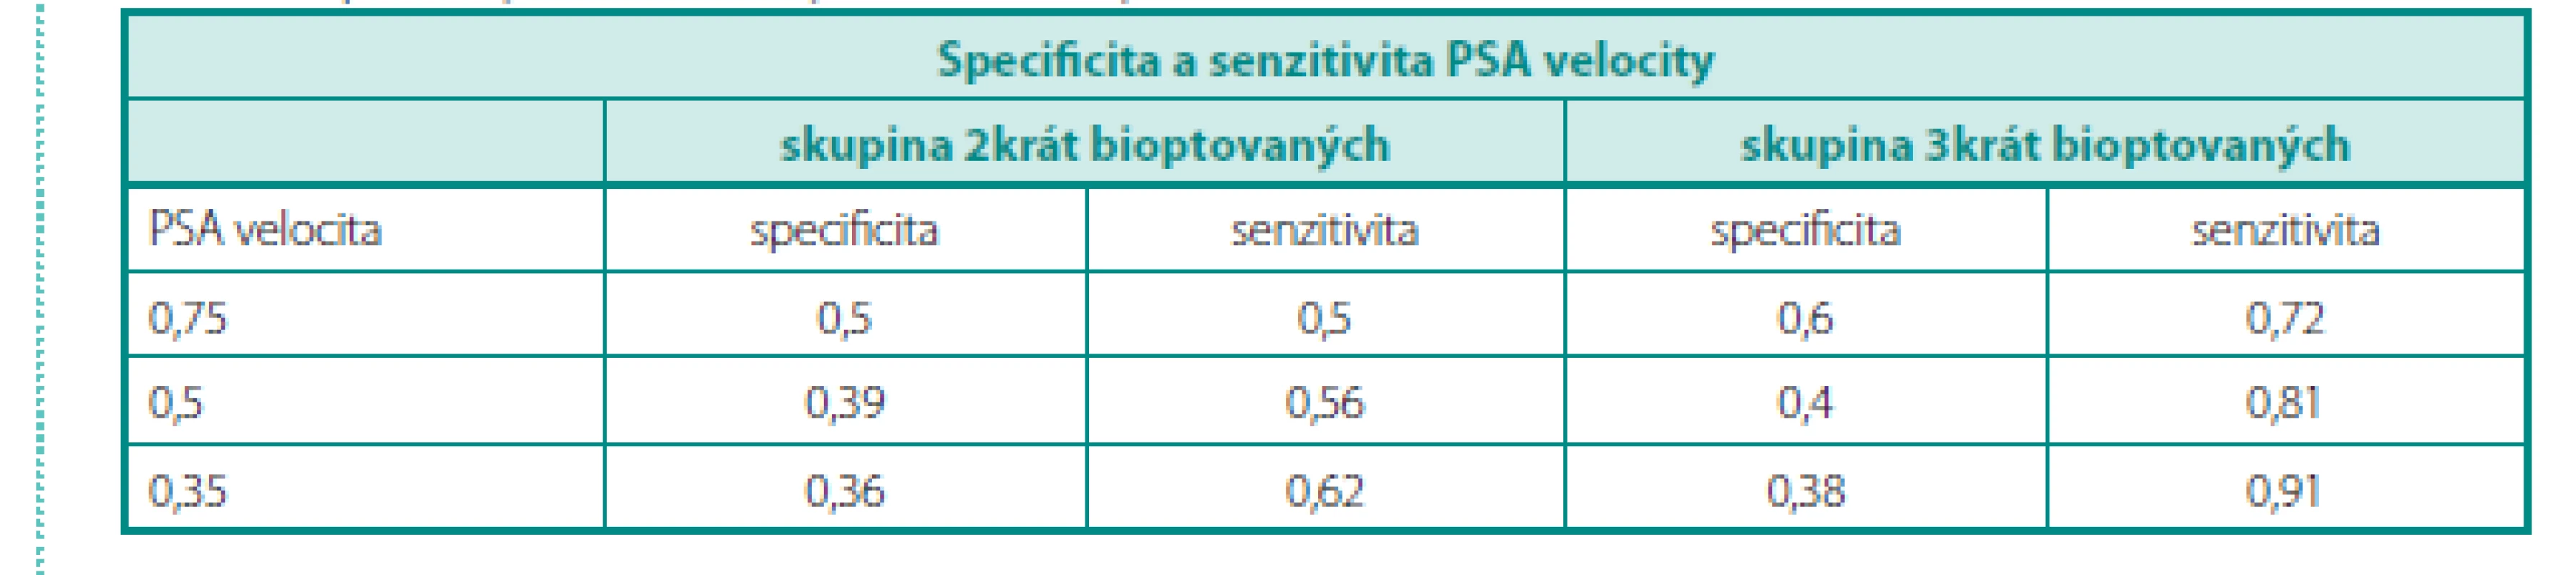 Specificita a senzitivita PSA velocity
Table 7. Specificity and sensitivity of PSA velocity